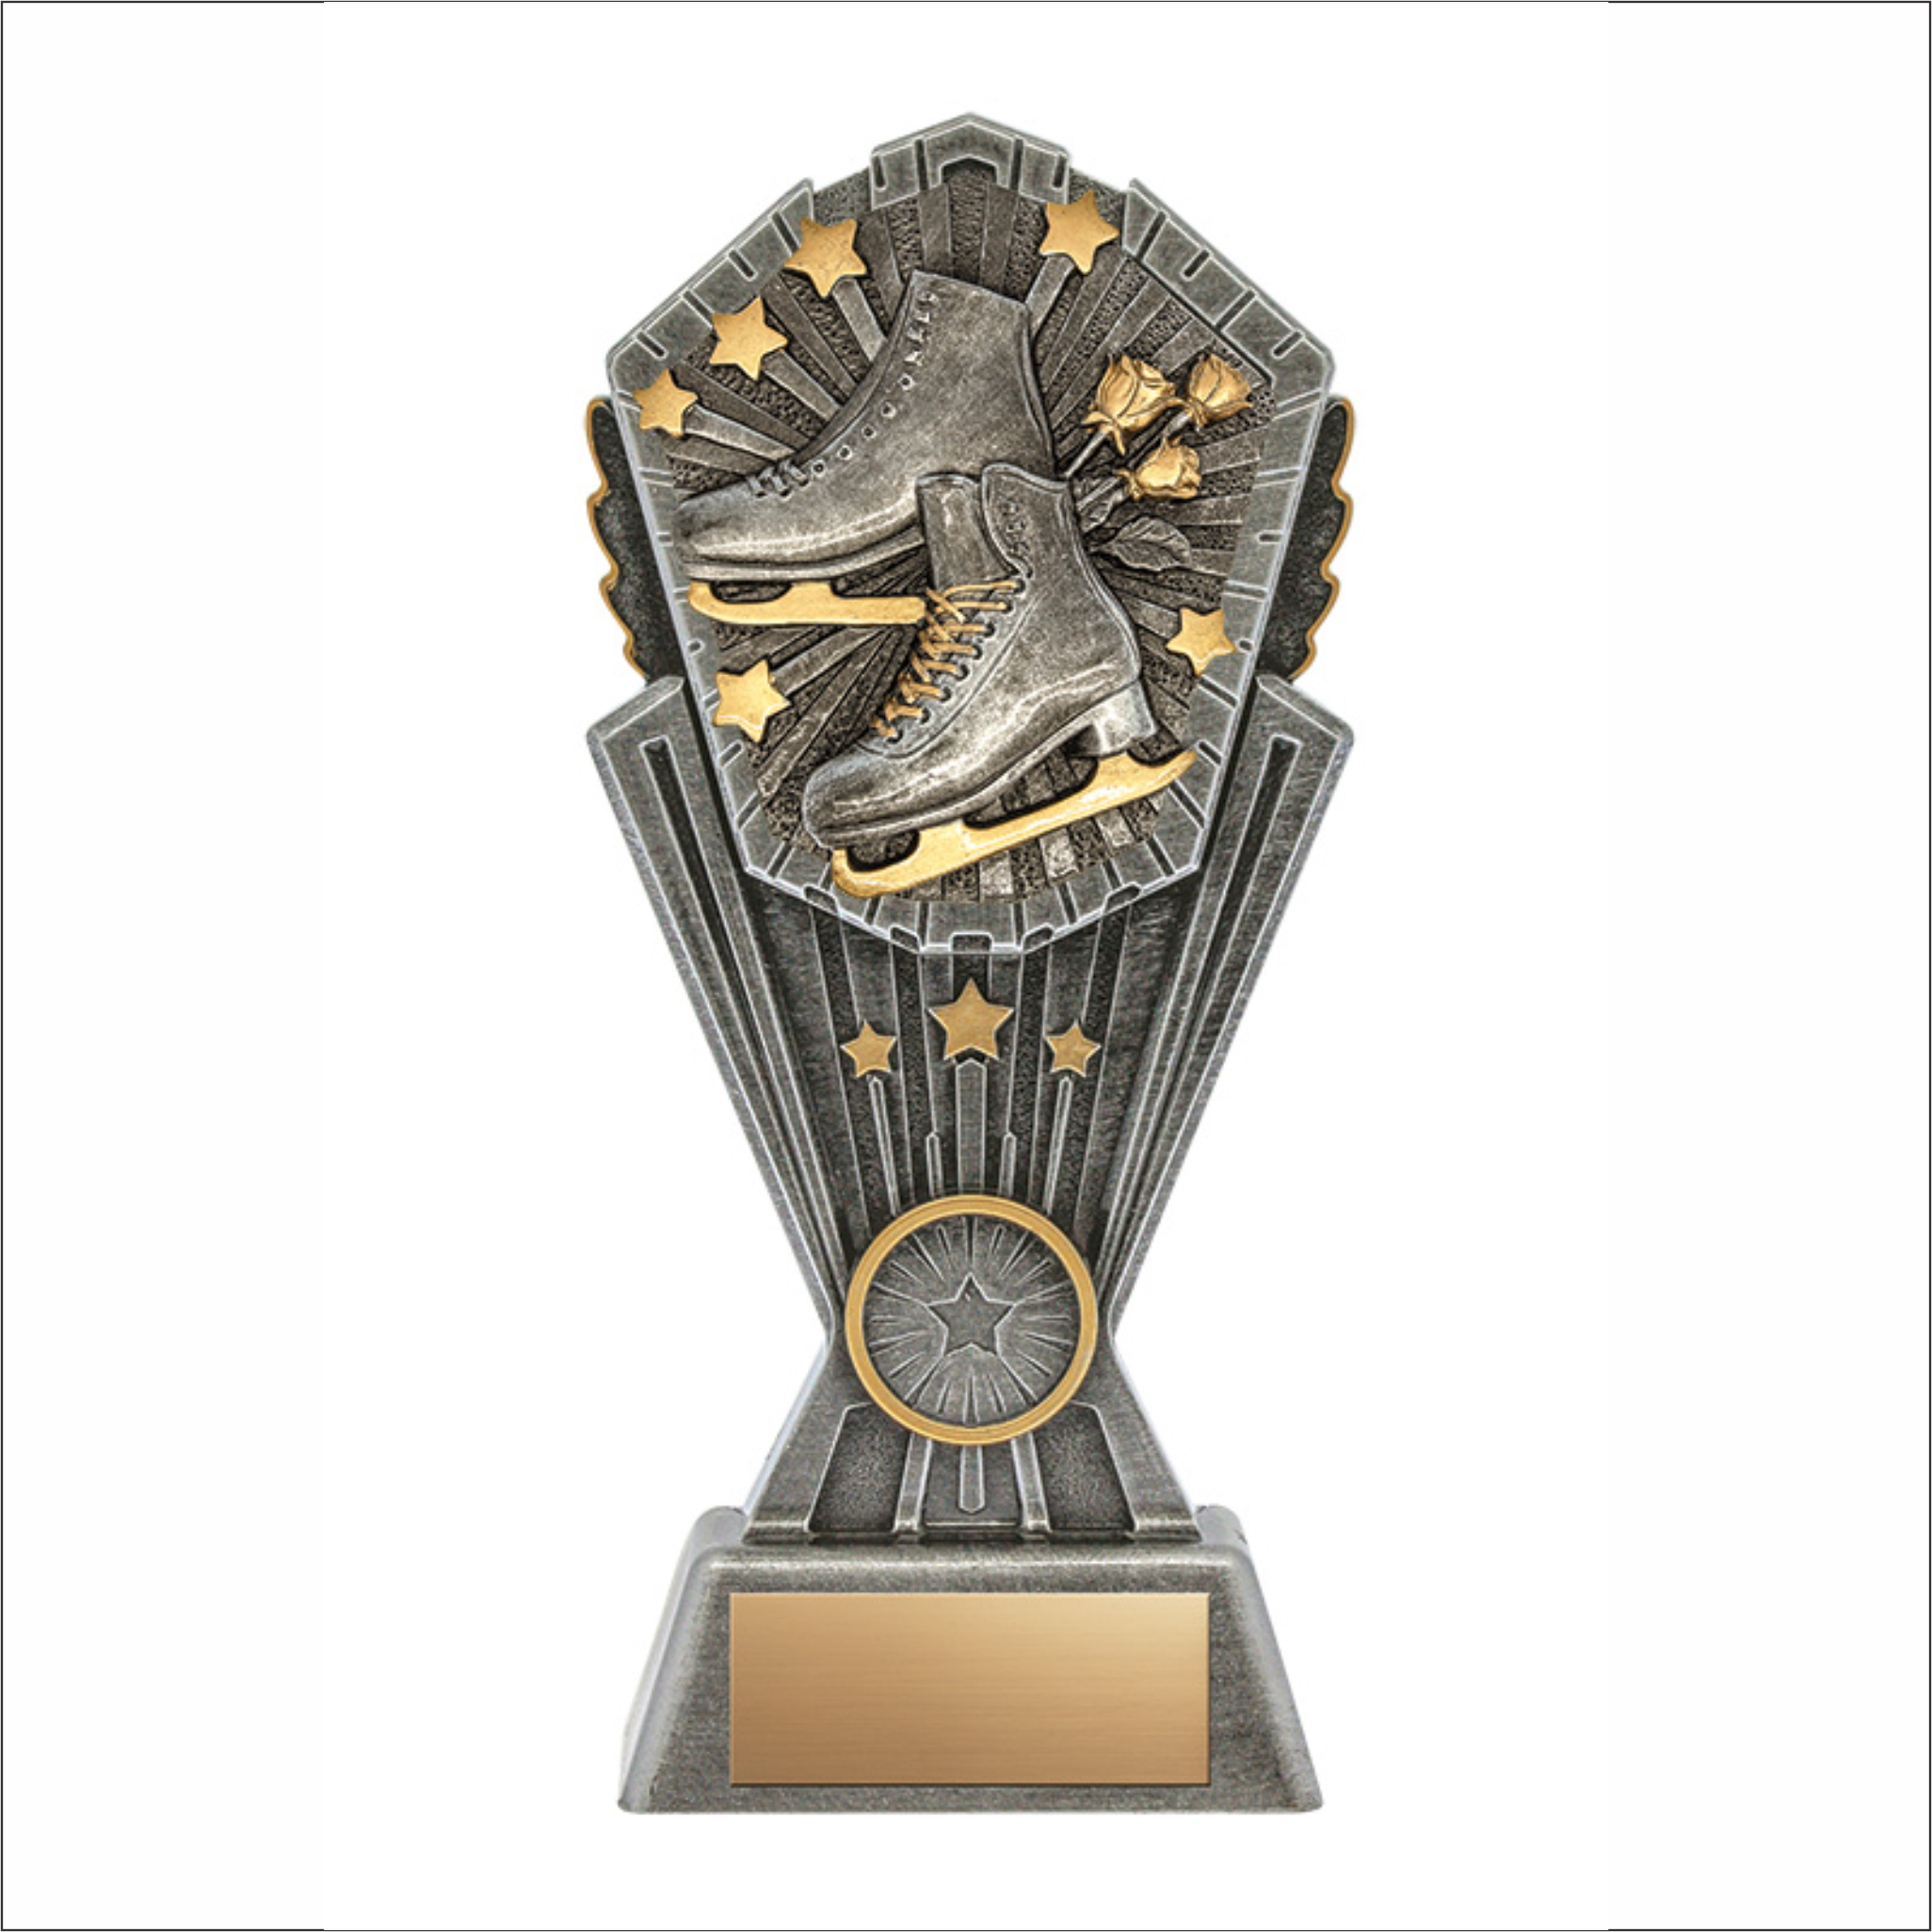 Figure Skating trophy - Cosmos series